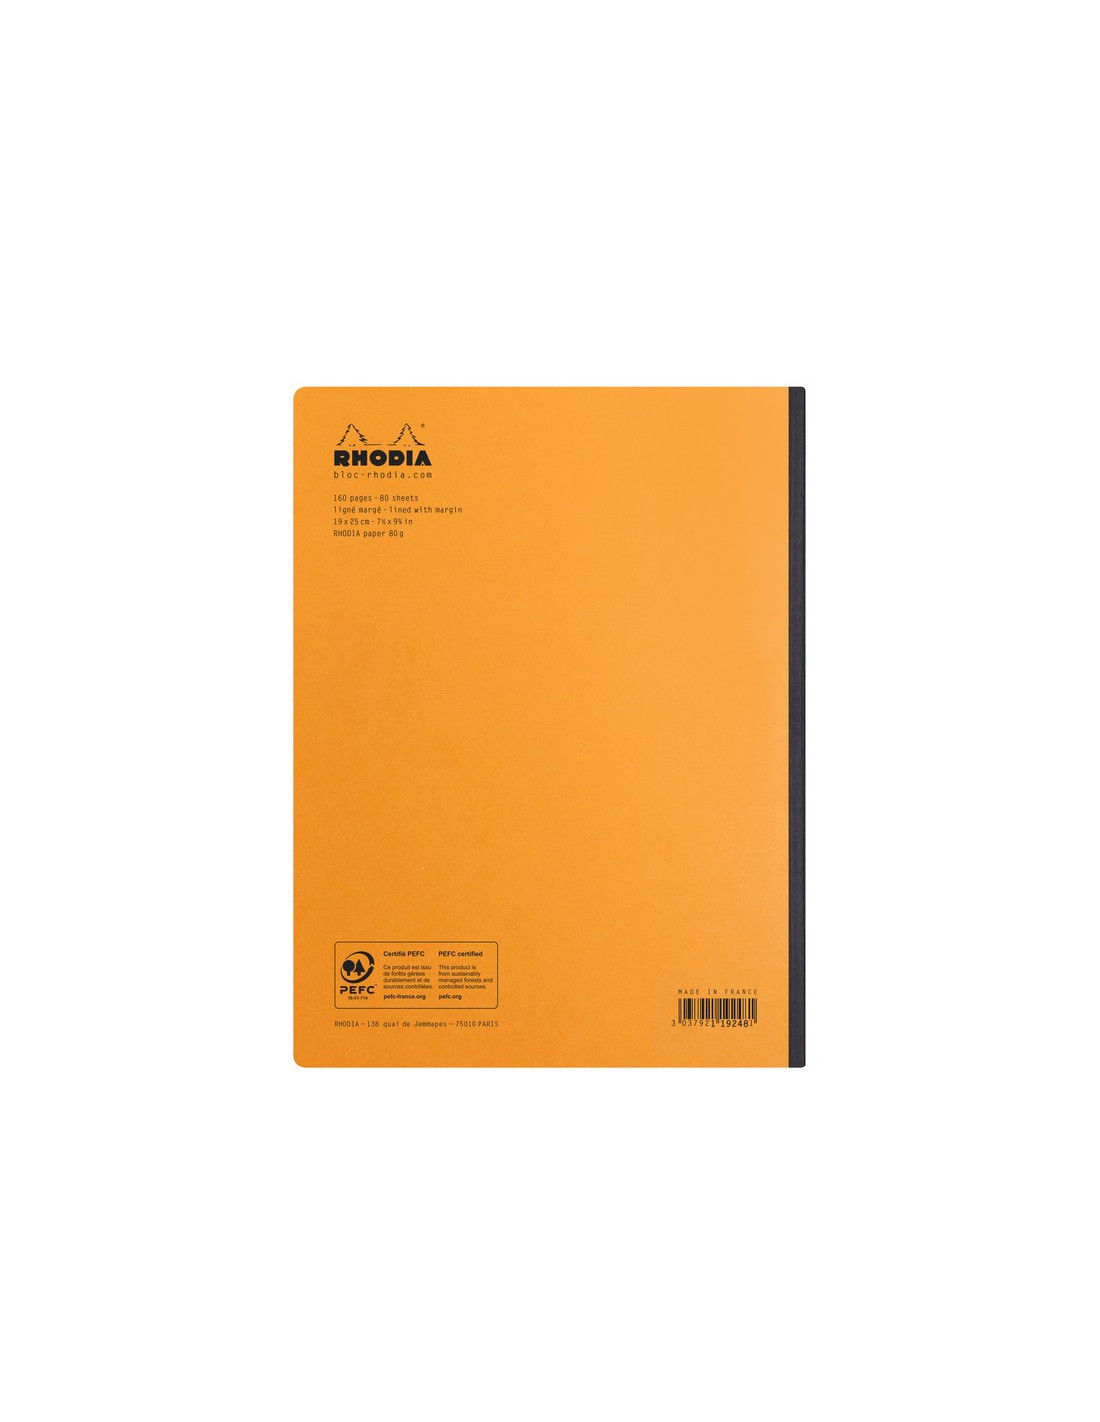 RHODIA - Cahier à Spirale Notebook Blanc - A4+ - Ligné - 160 pages